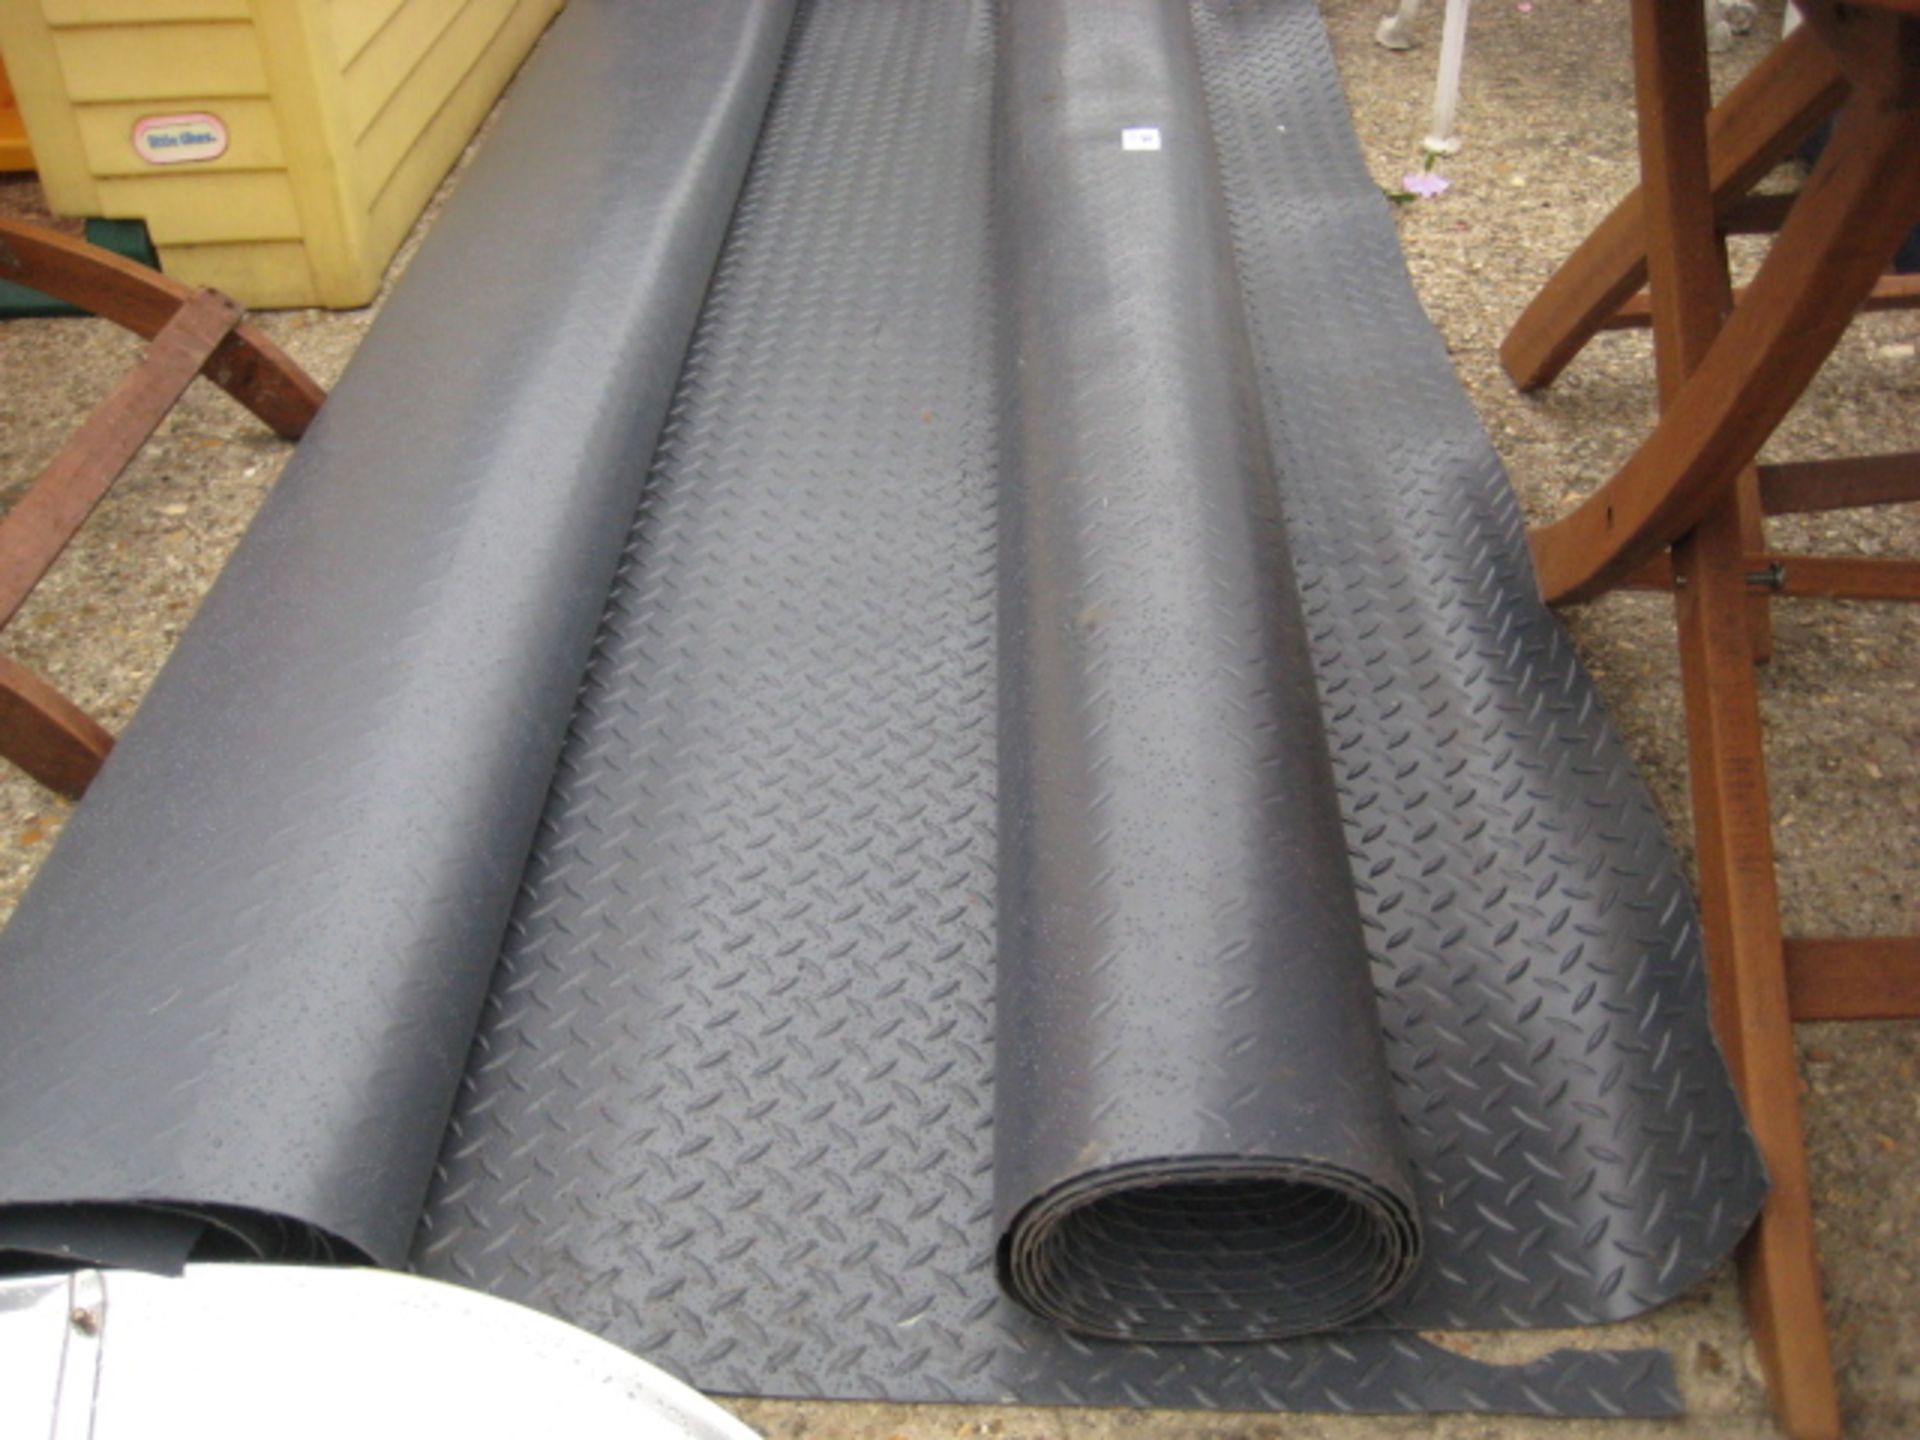 2 rolls of heavy duty vinyl flooring